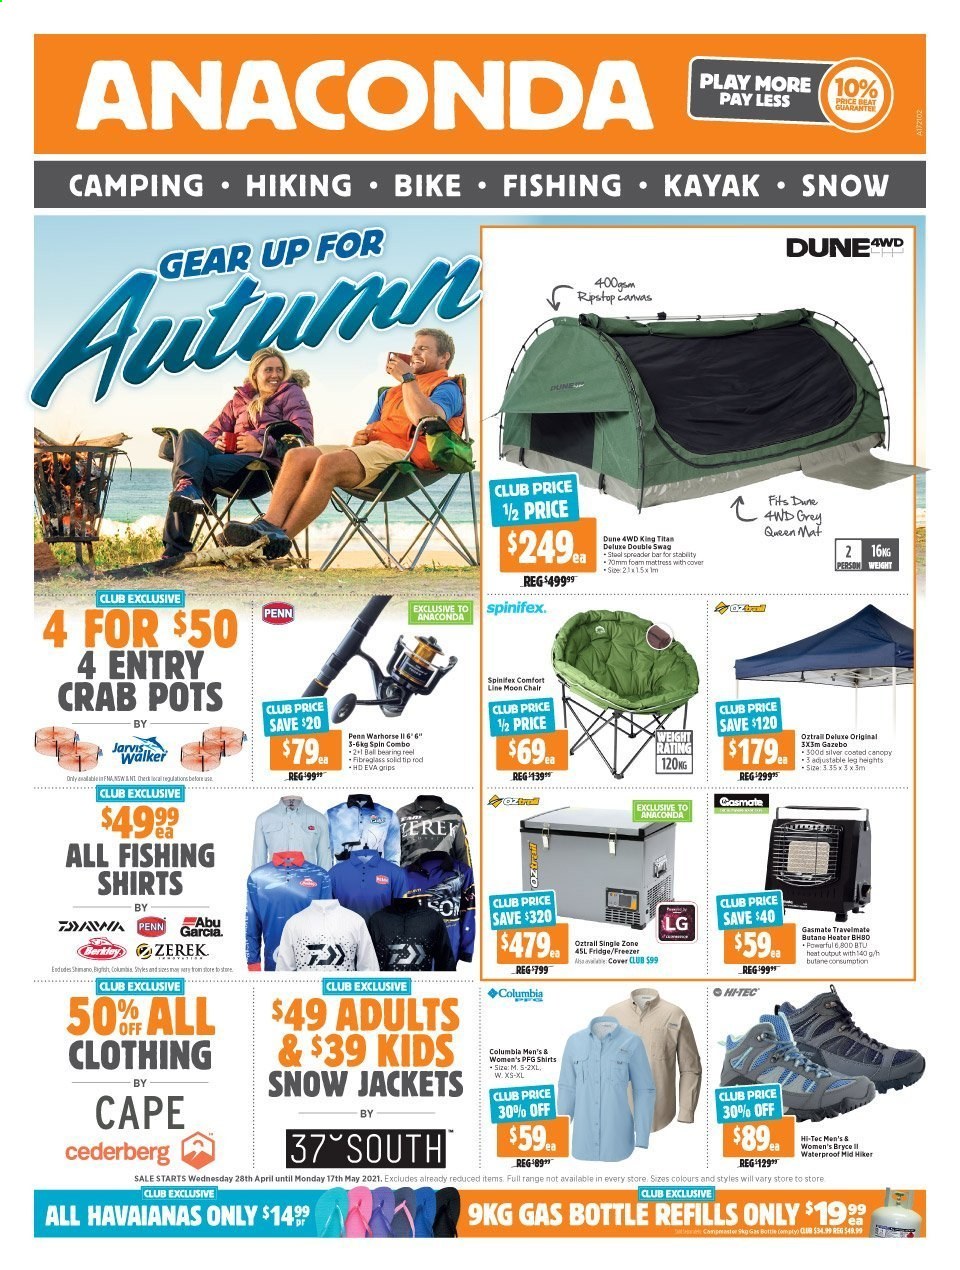 thumbnail - Anaconda Catalogue - 28 Apr 2021 - 17 May 2021 - Sales products - Columbia, HI-TEC, jacket, shirt, kayak, reel, fishing rod, gas bottle, Penn, swag. Page 1.